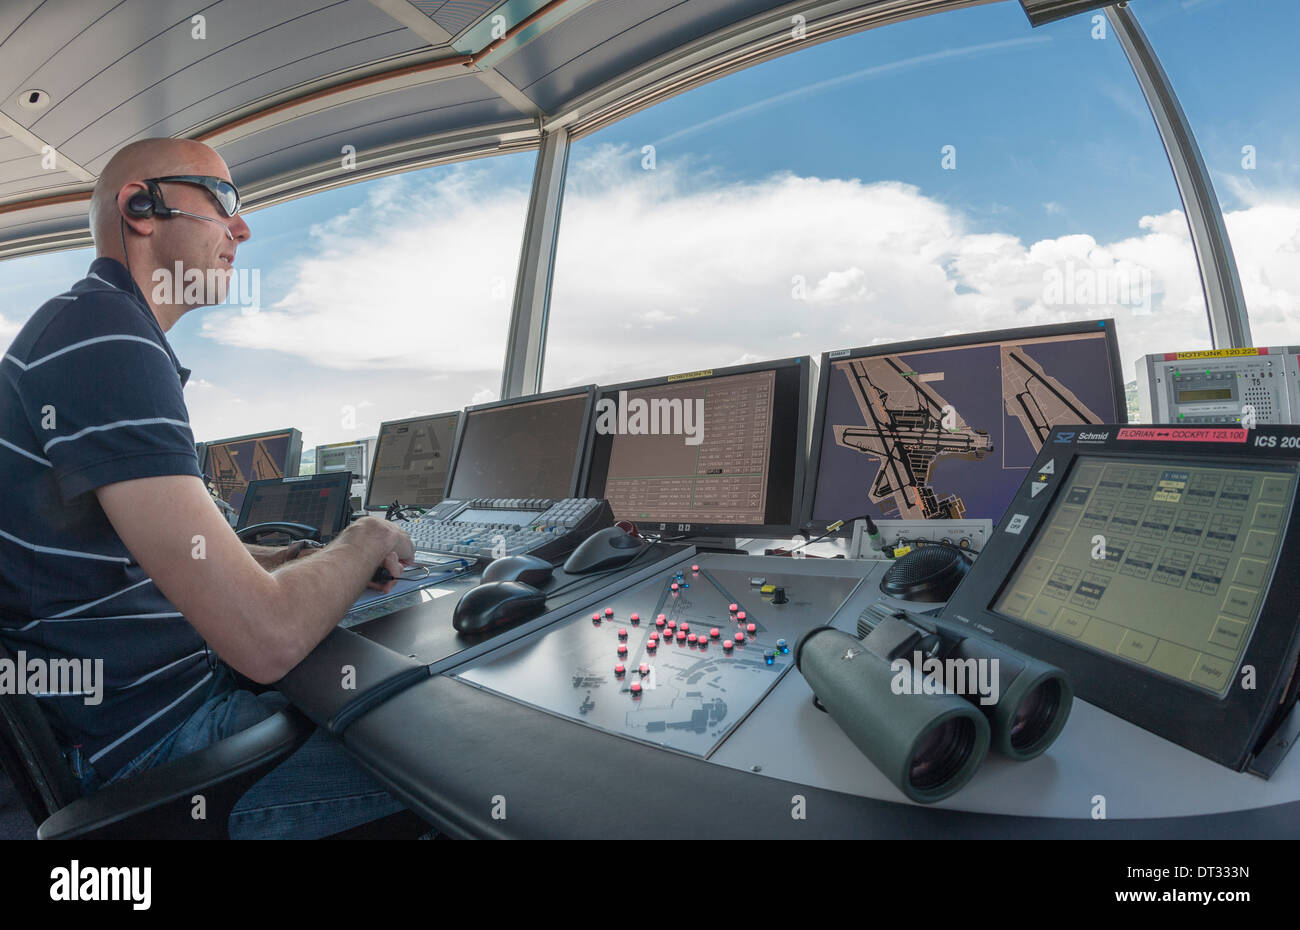 Un contrôleur de la circulation aérienne à la tour de contrôle de l'aéroport international de Kloten/Zurich est la surveillance de l'aéroport par l'aérodrome. Banque D'Images